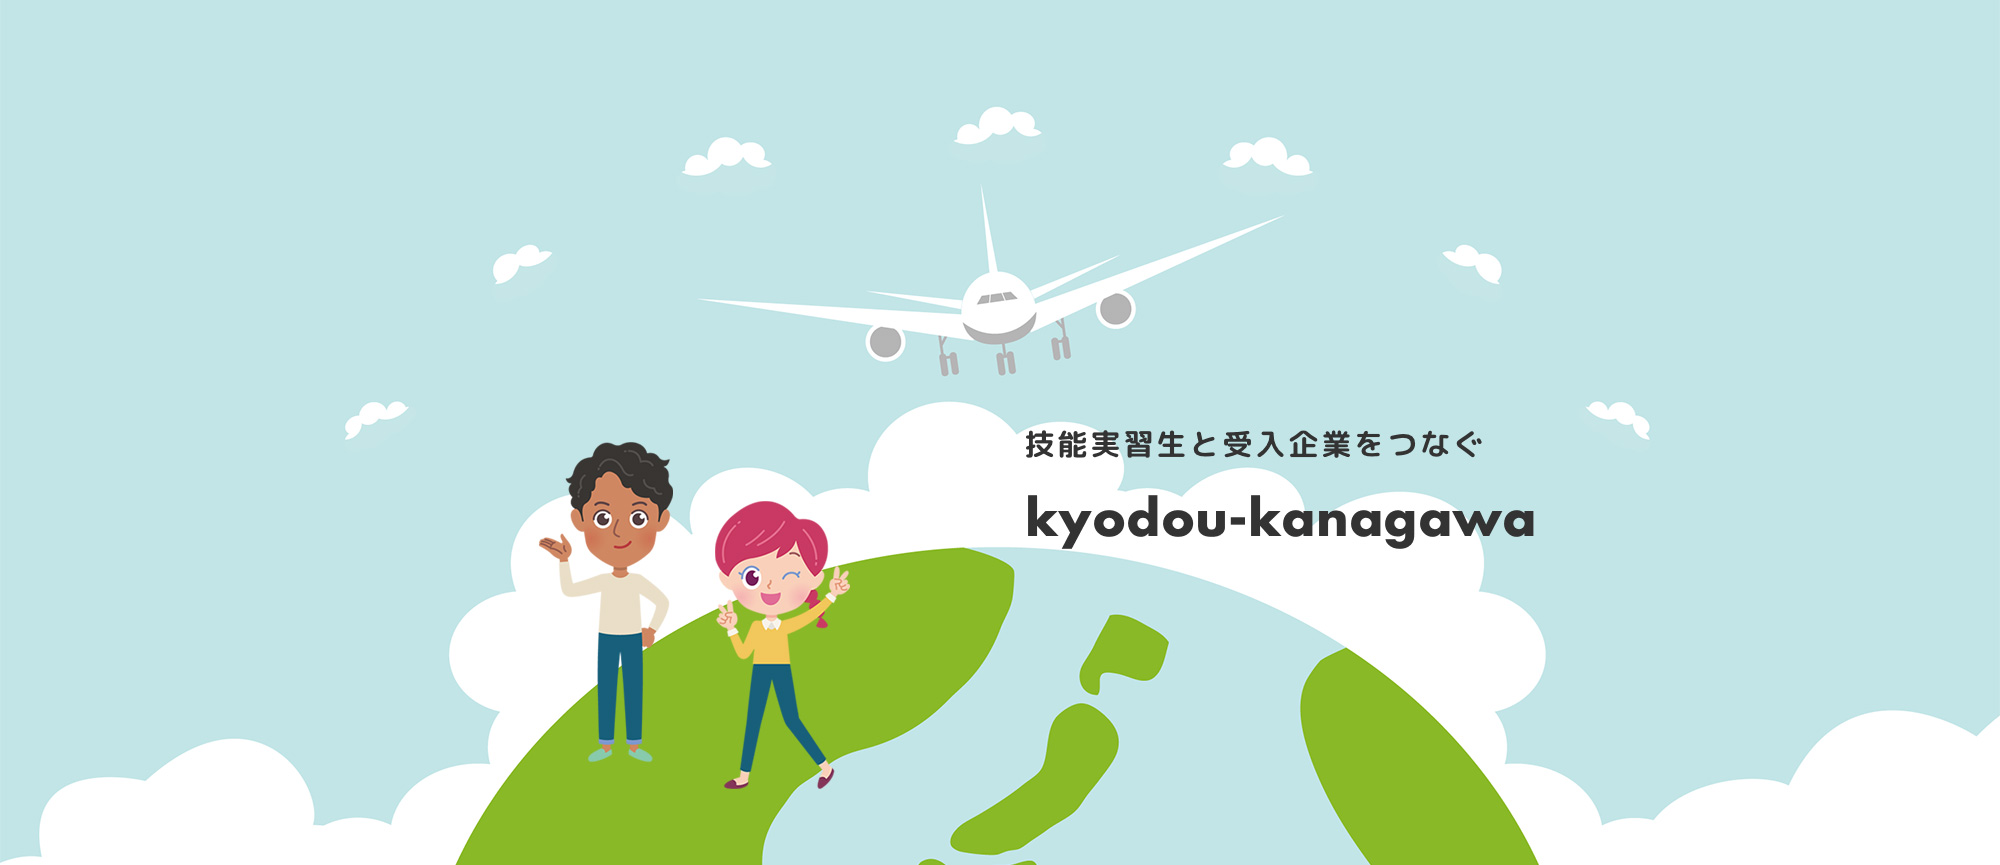 技能実習生と受入企業をつなぐkyodou-kanagawa